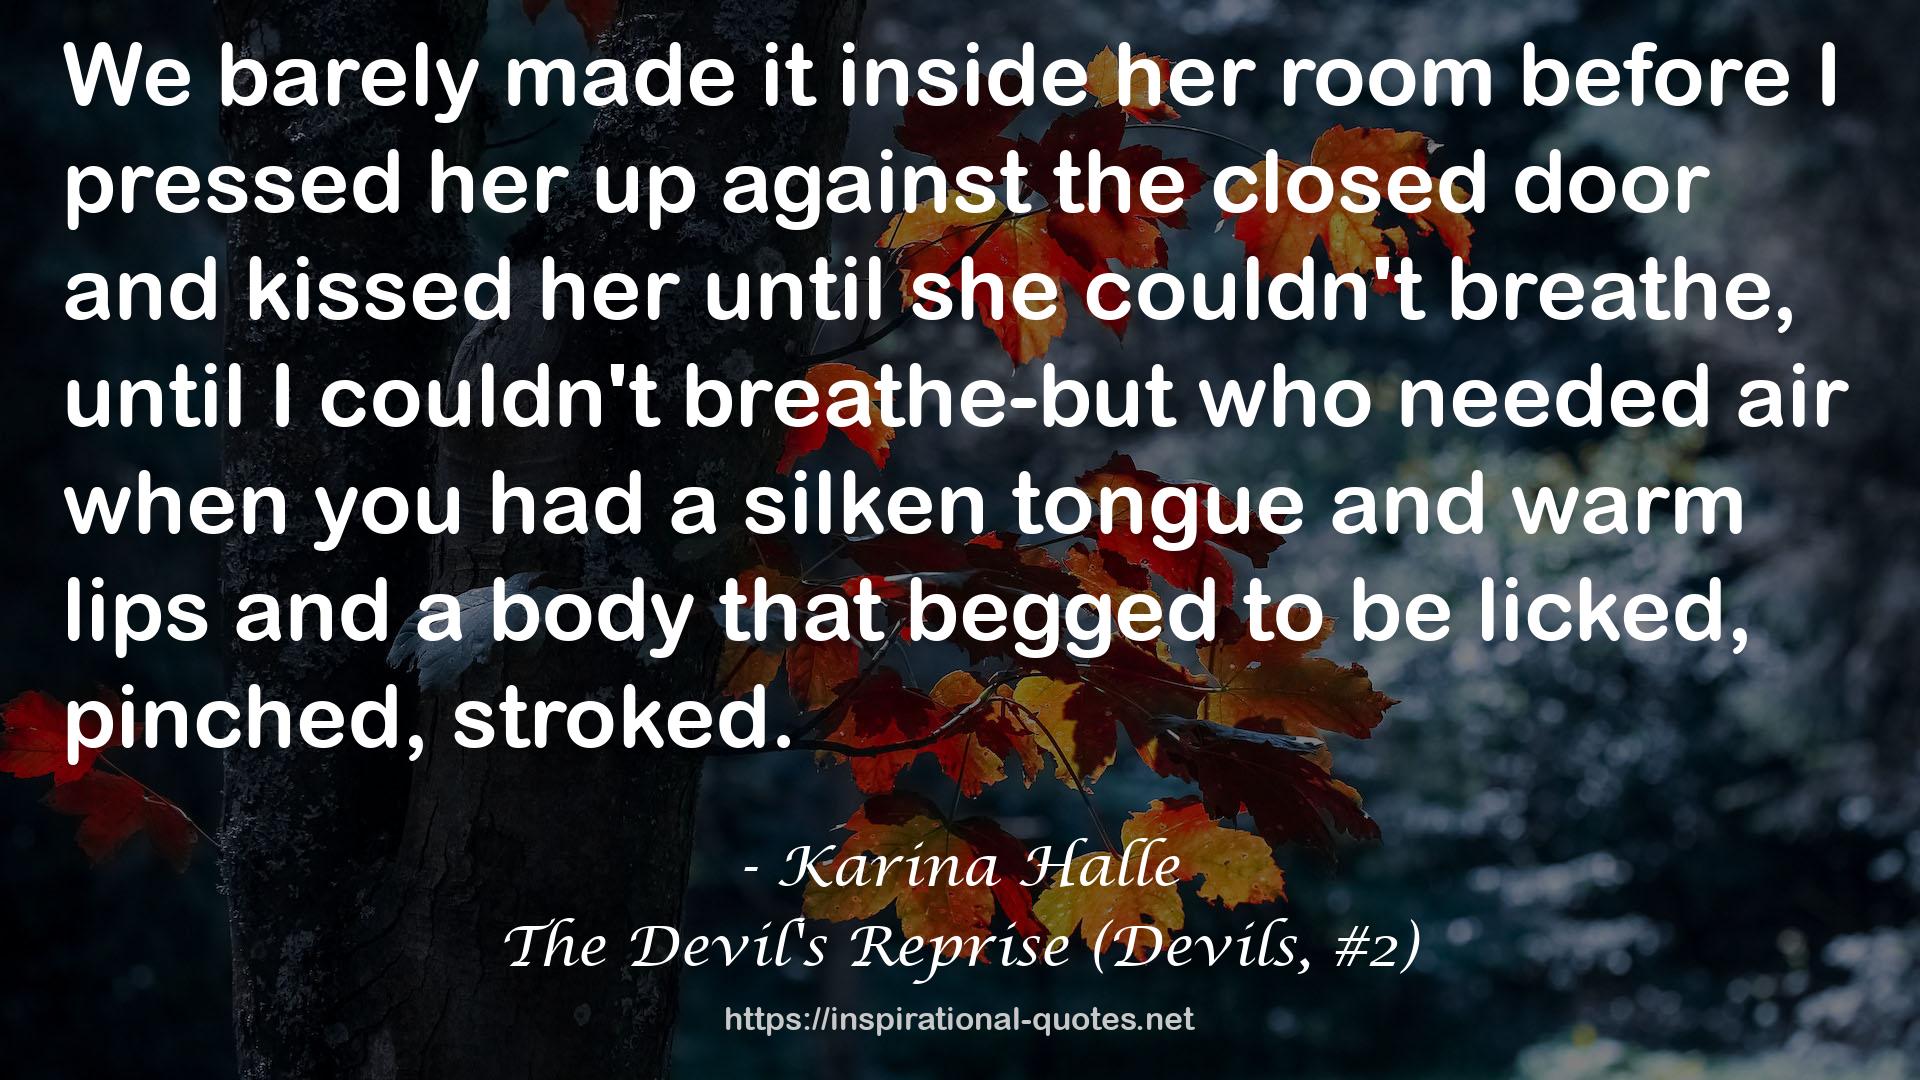 The Devil's Reprise (Devils, #2) QUOTES